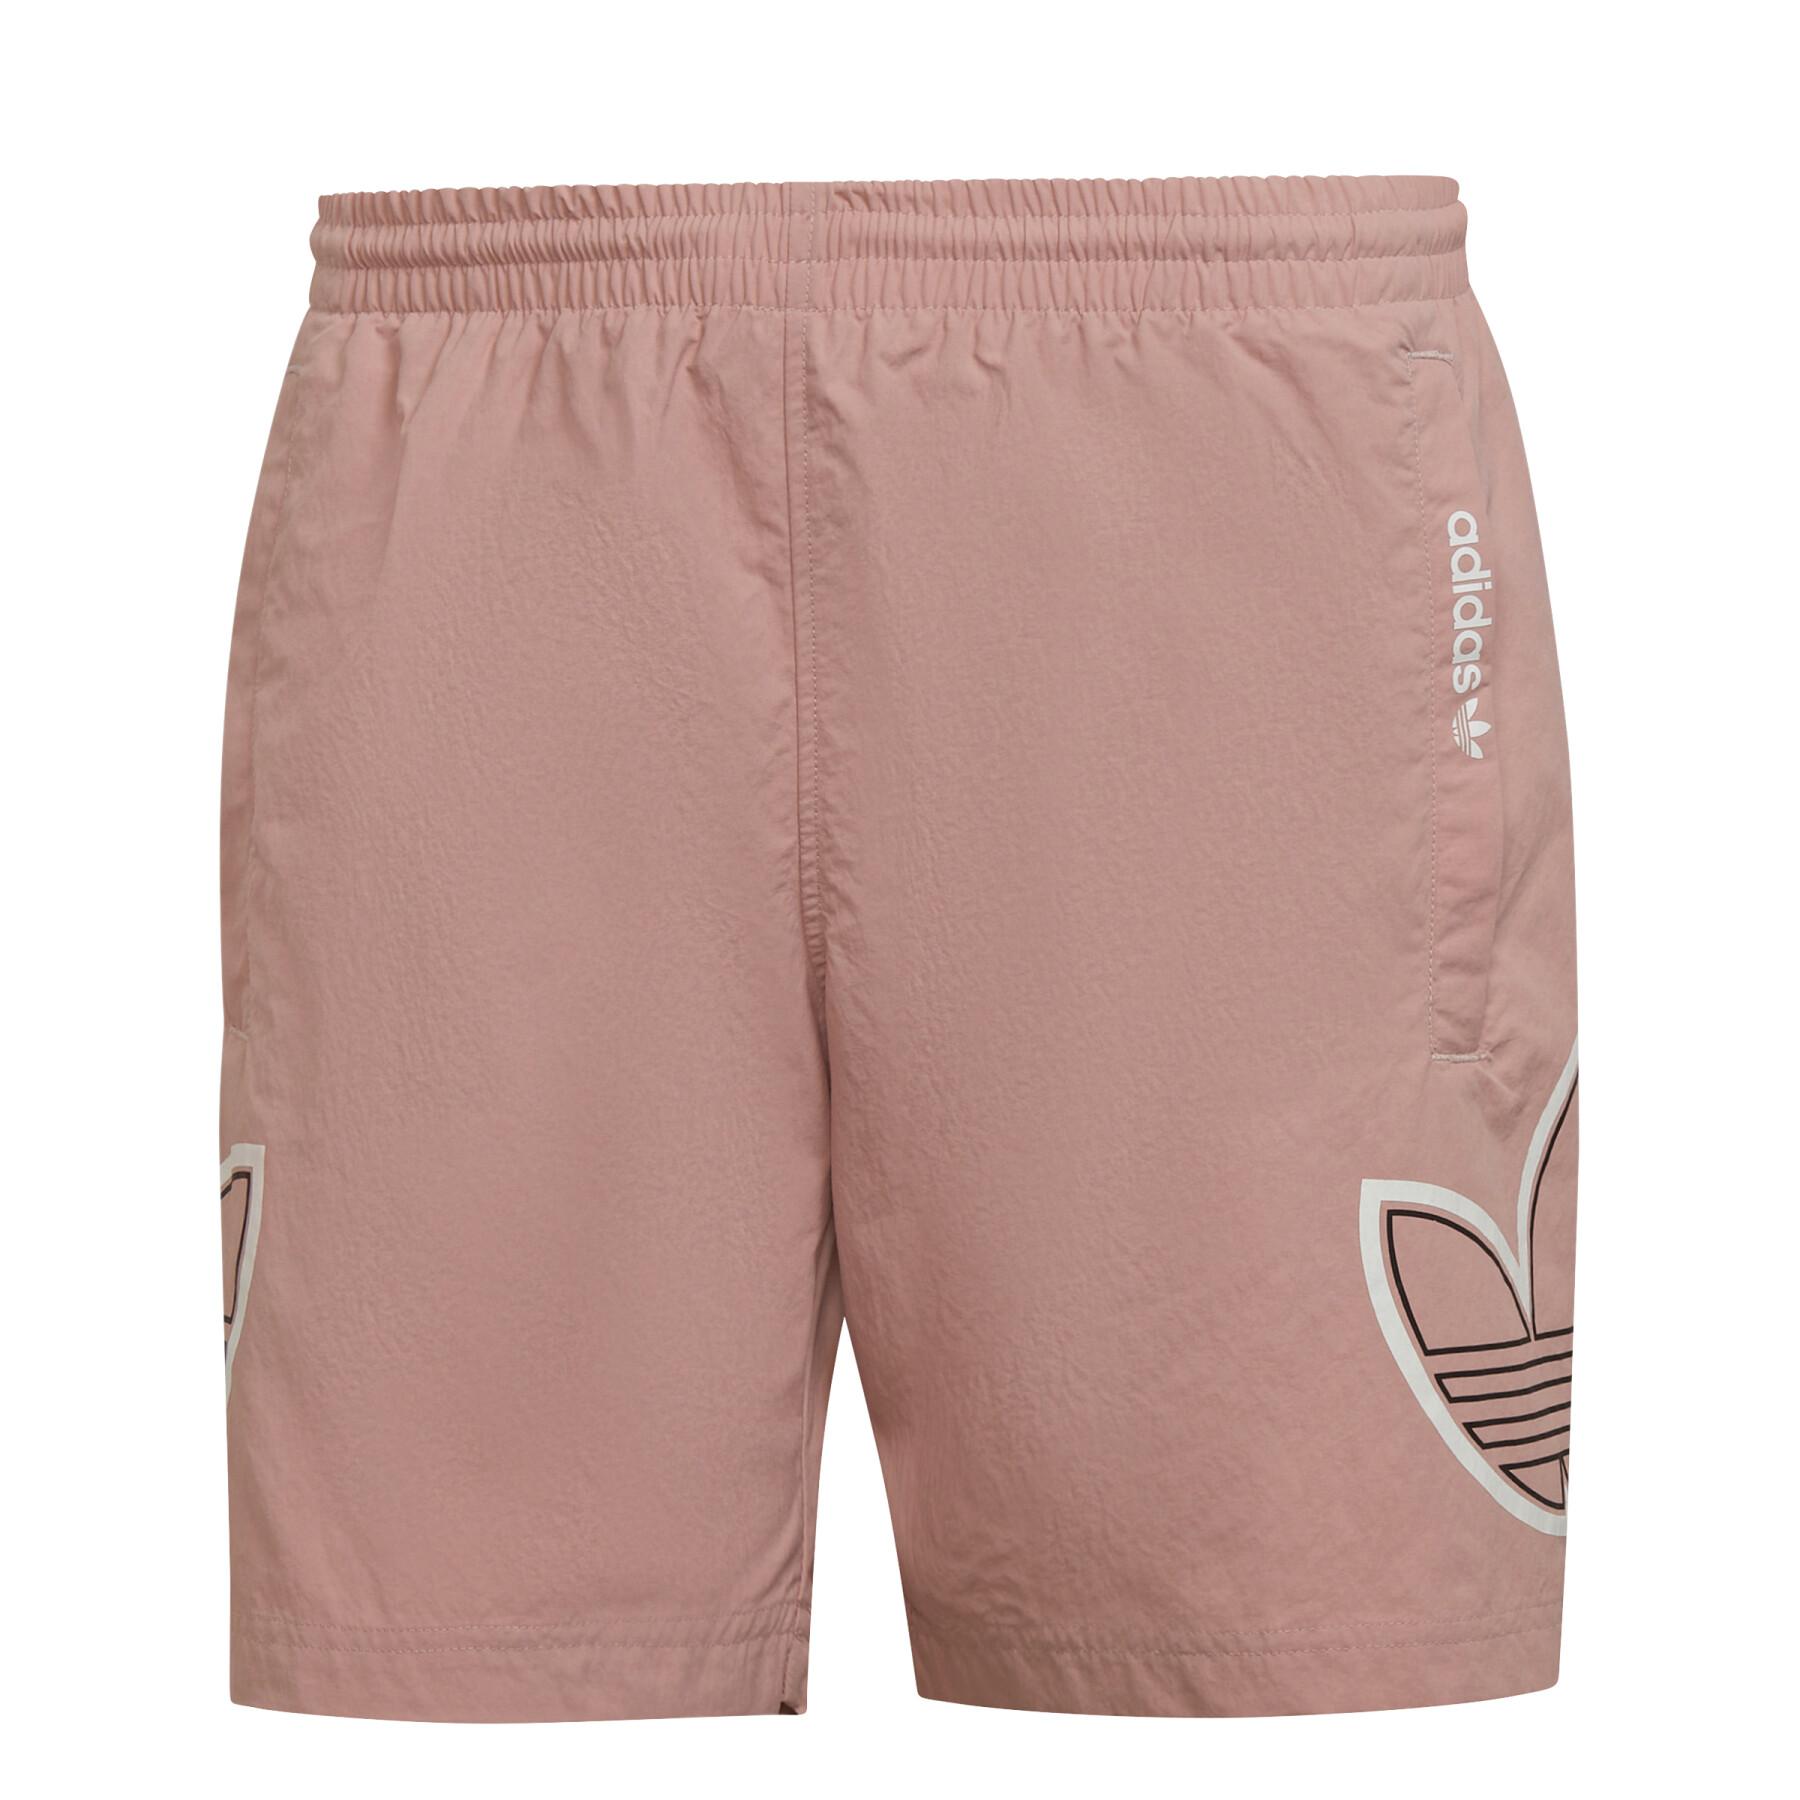 Swim shorts adidas Originals SPRT